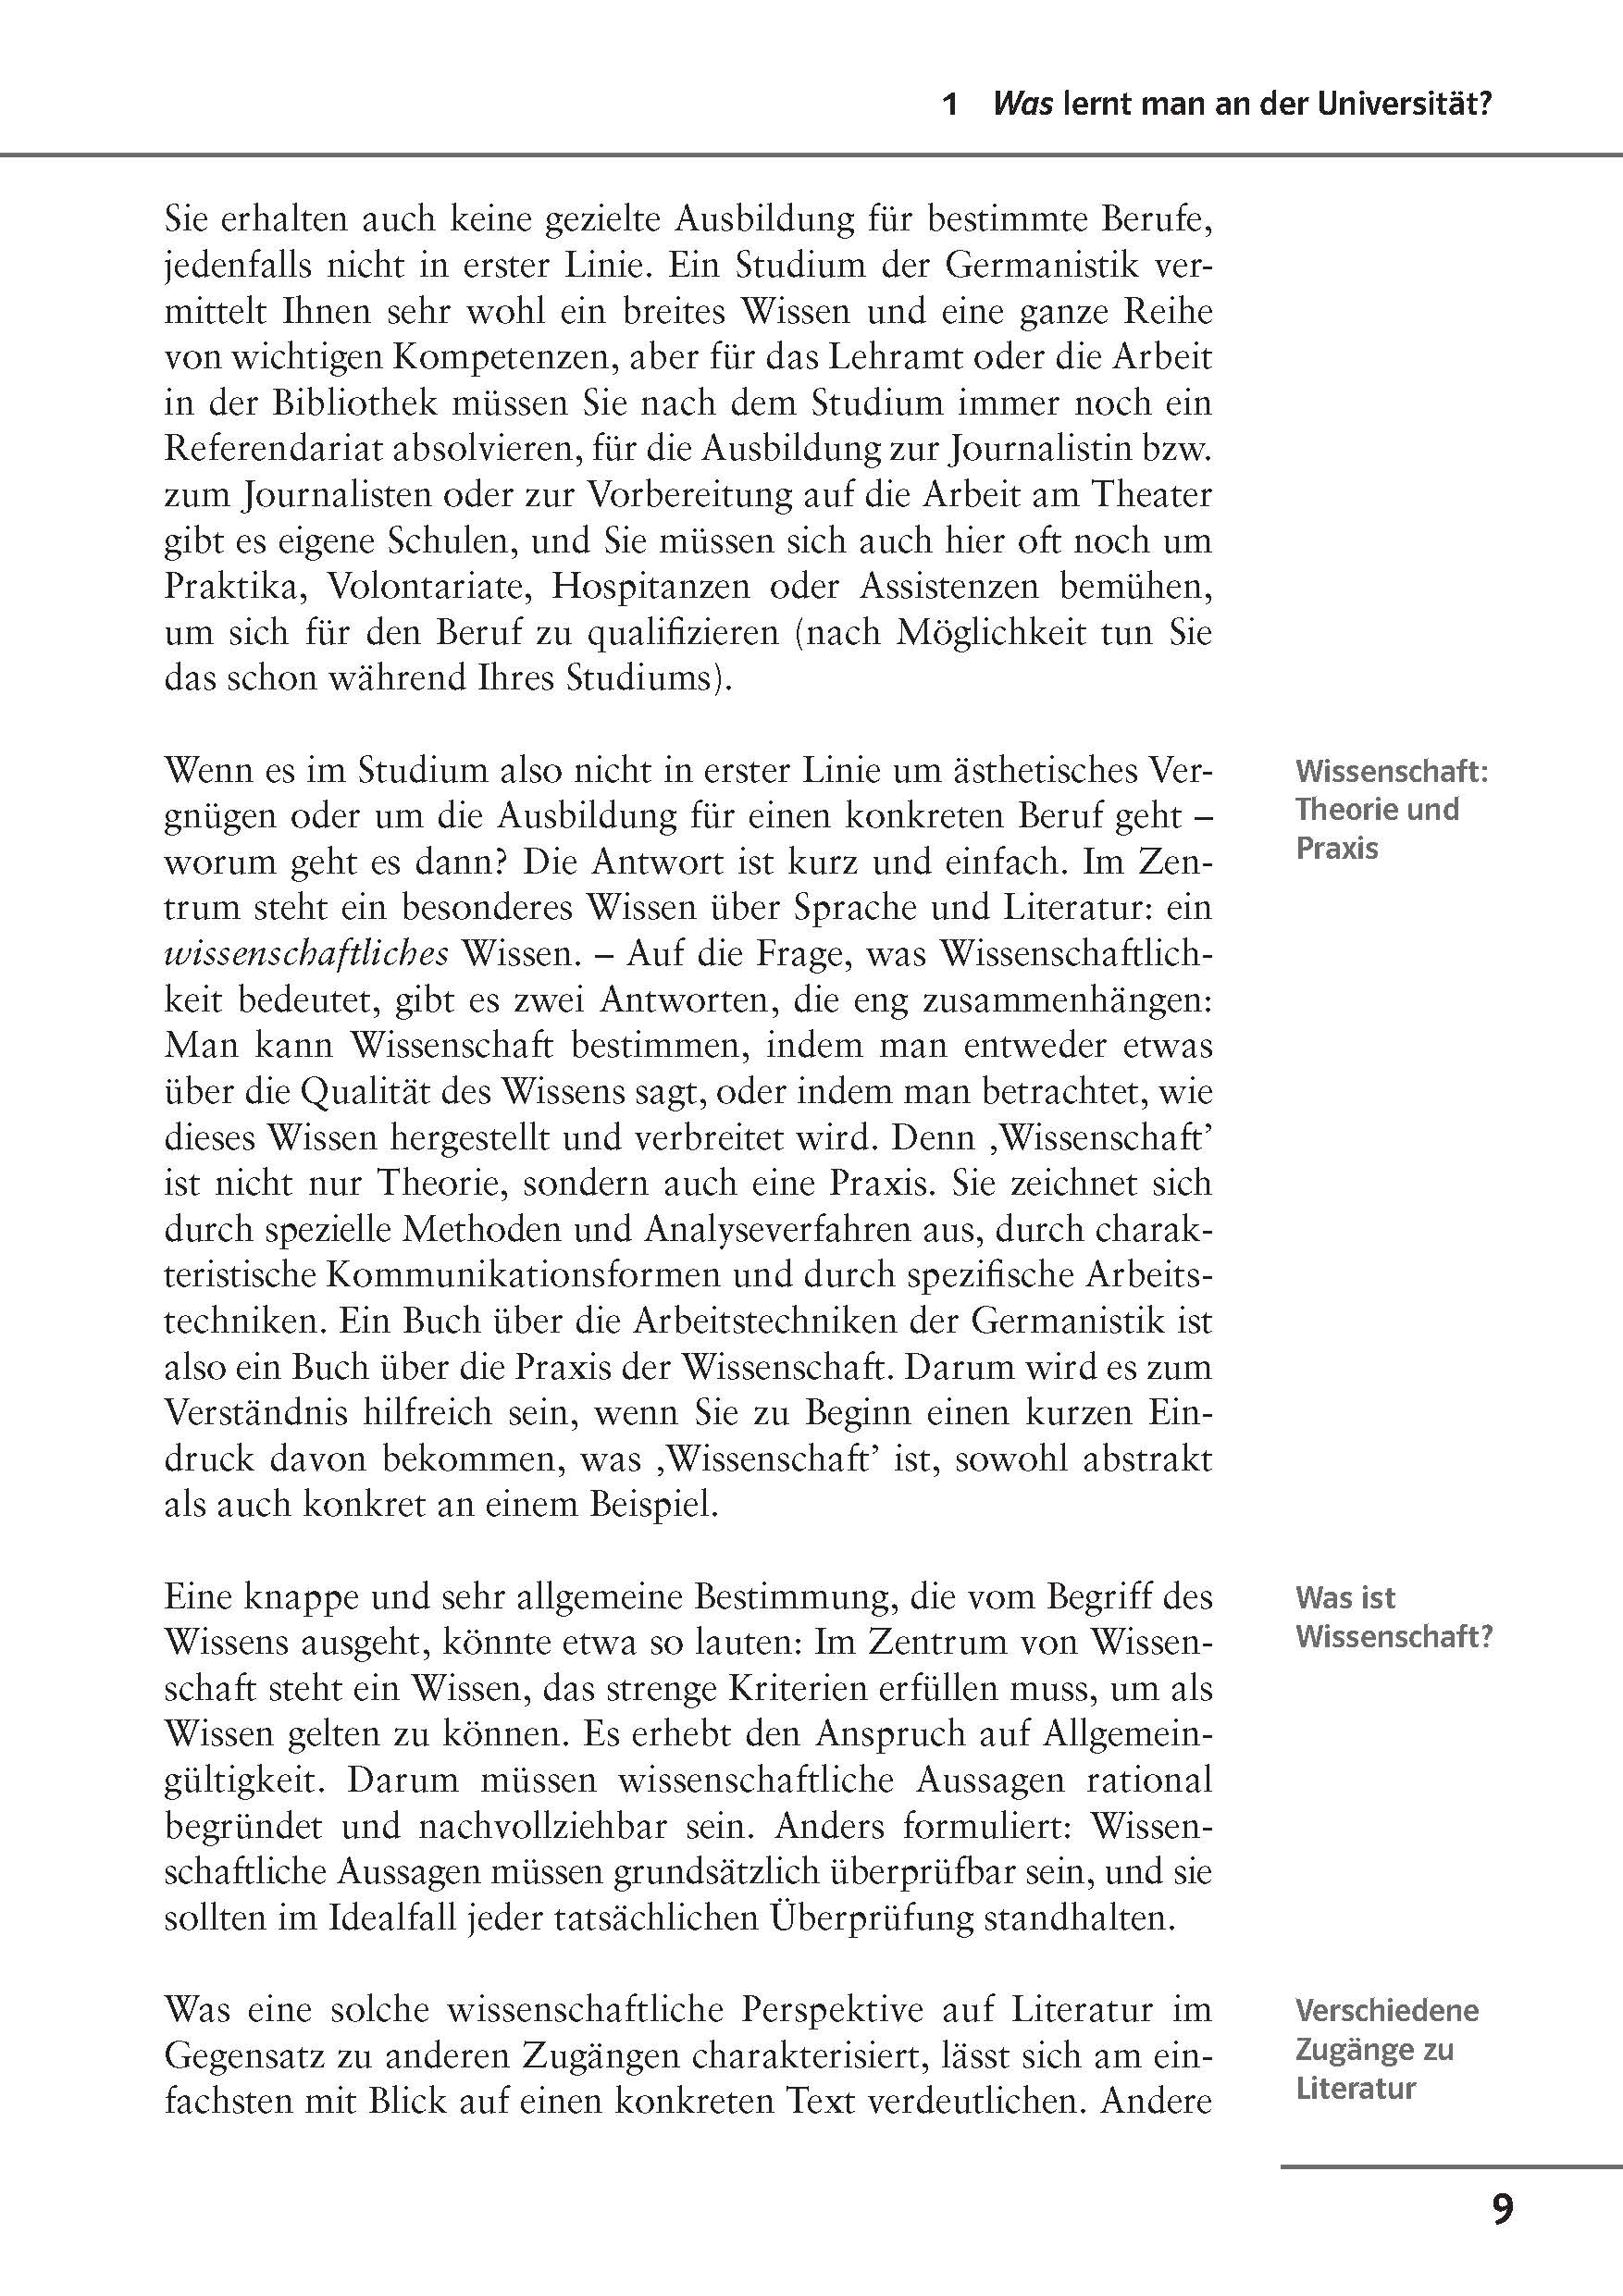 Klett Uni Wissen Arbeitstechniken Germanistik